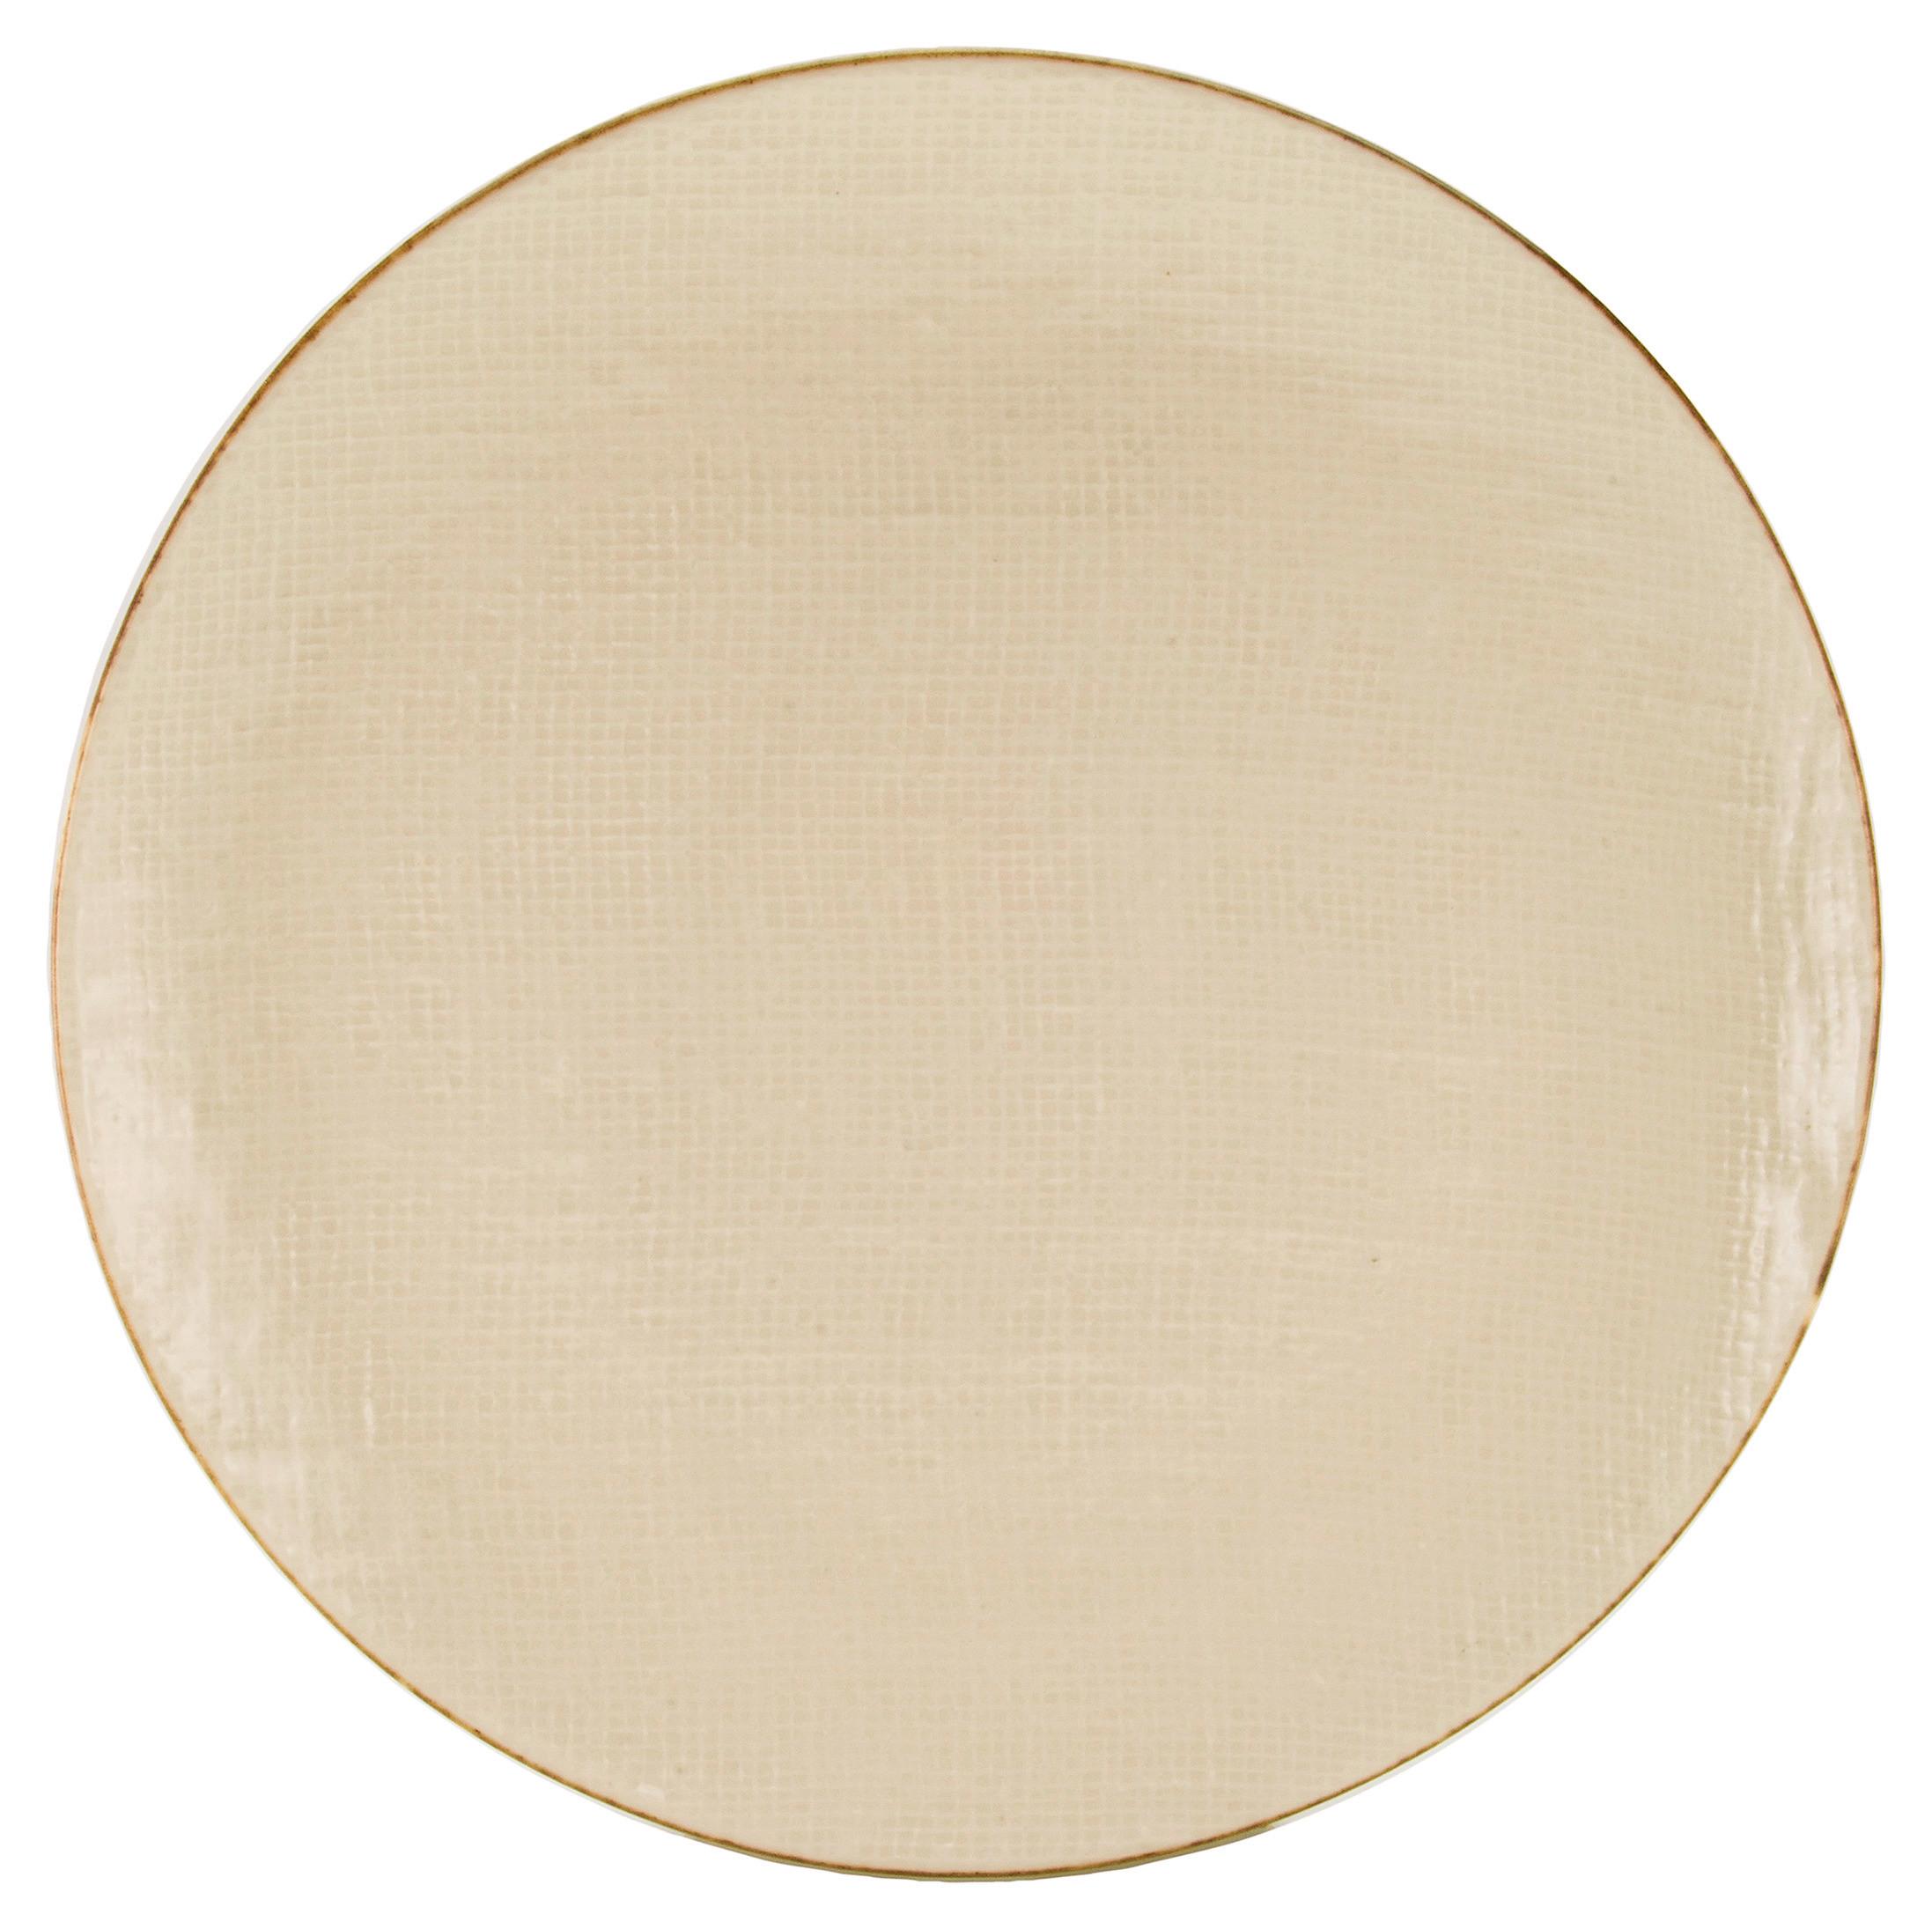 Dessertteller Canvas aus Steinzeug Ø ca.22cm - Creme/Weiß, Keramik (22/22/2,5cm) - Premium Living